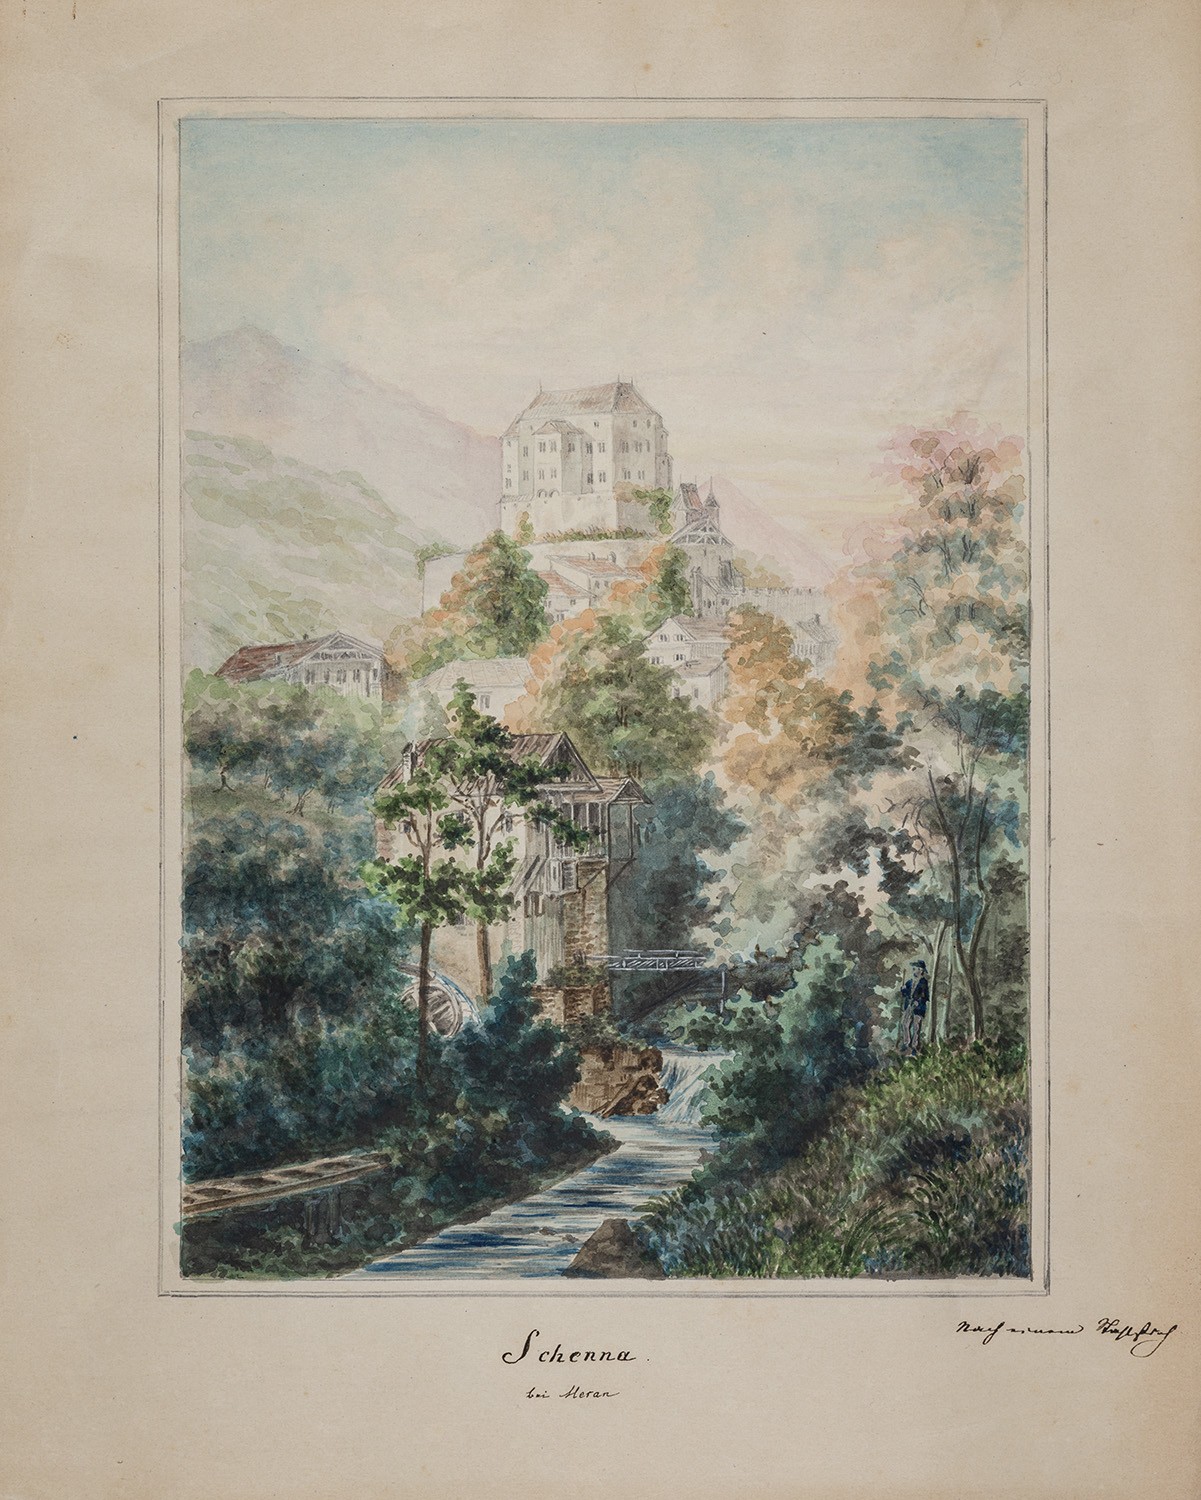 Schenna bei Meran (Südtirol) (ital. Scena): Schloss (Landesgeschichtliche Vereinigung für die Mark Brandenburg e.V., Archiv CC BY)